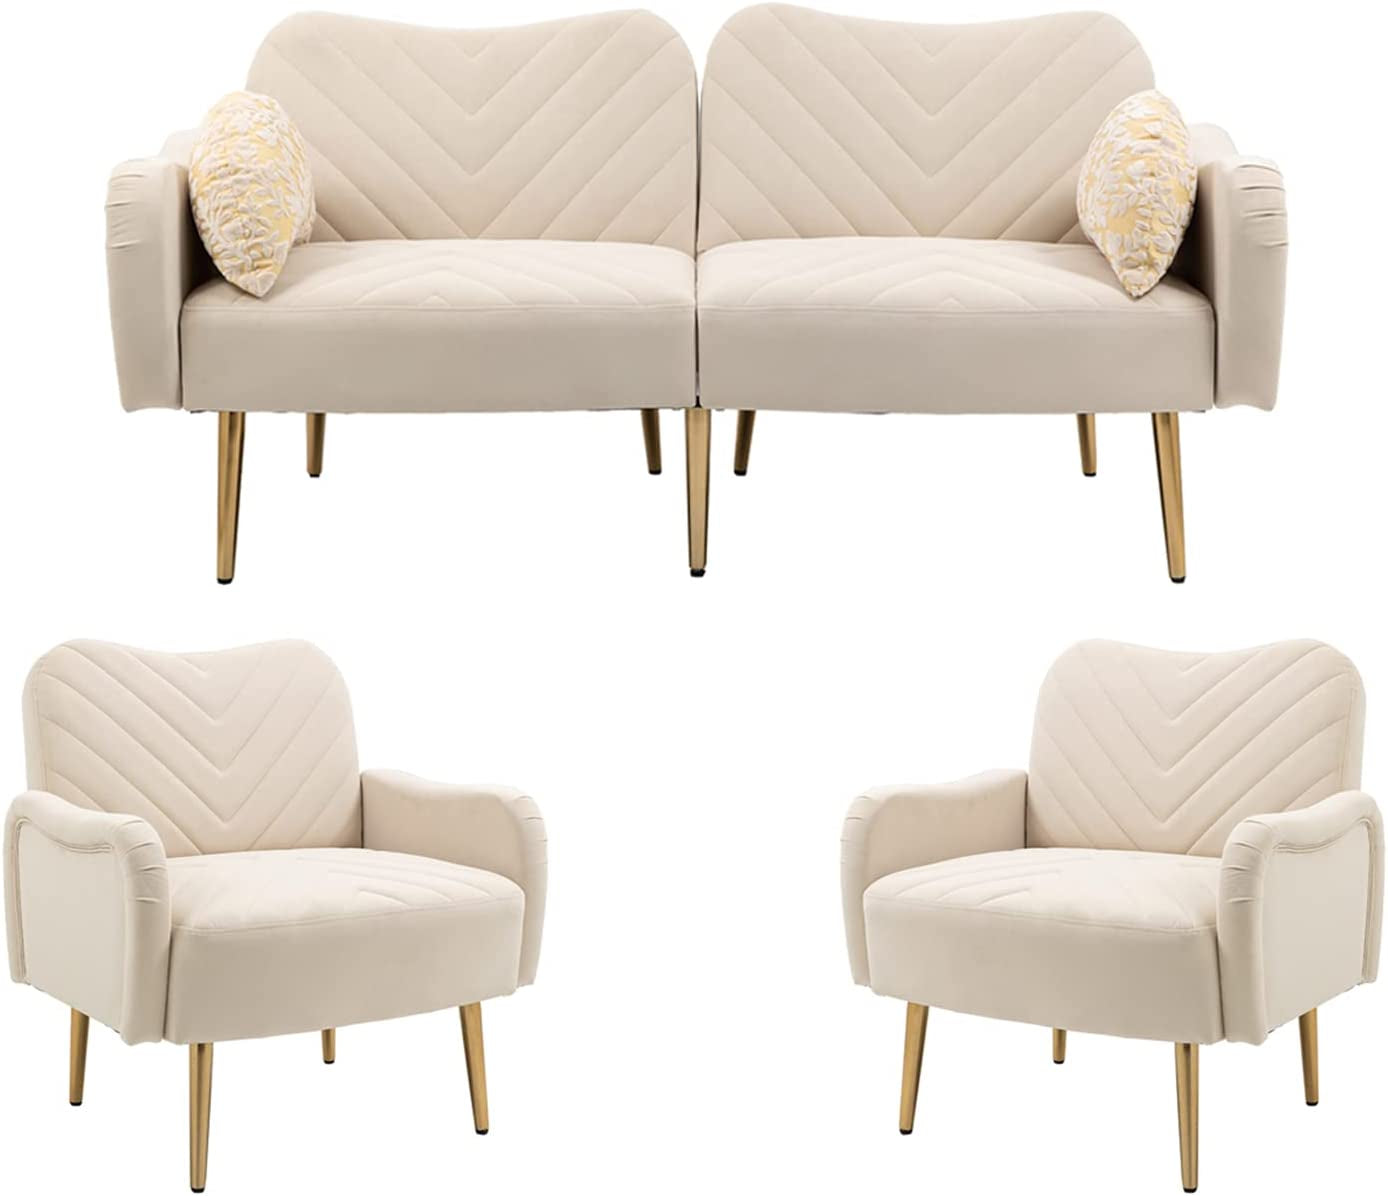 Modern Green Velvet Sofa Set with Gold Legs